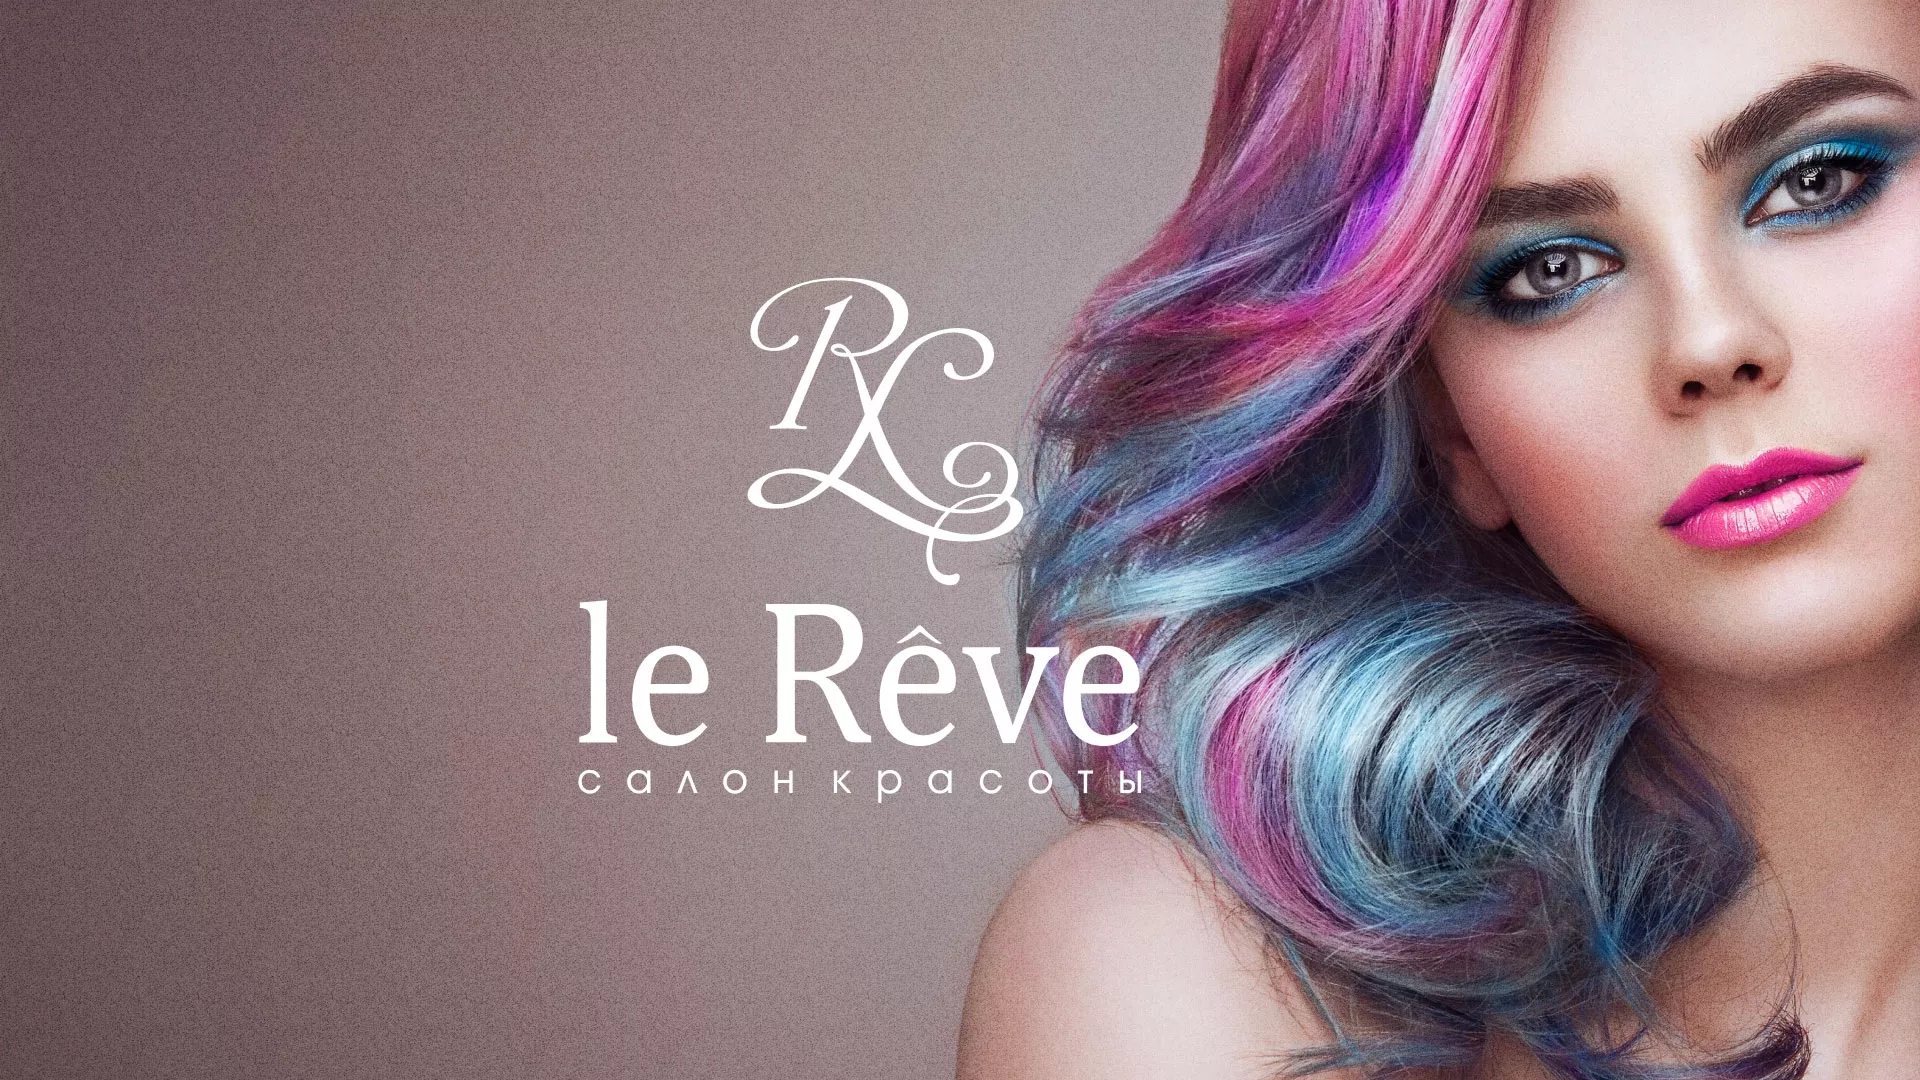 Создание сайта для салона красоты «Le Reve» в Гдове